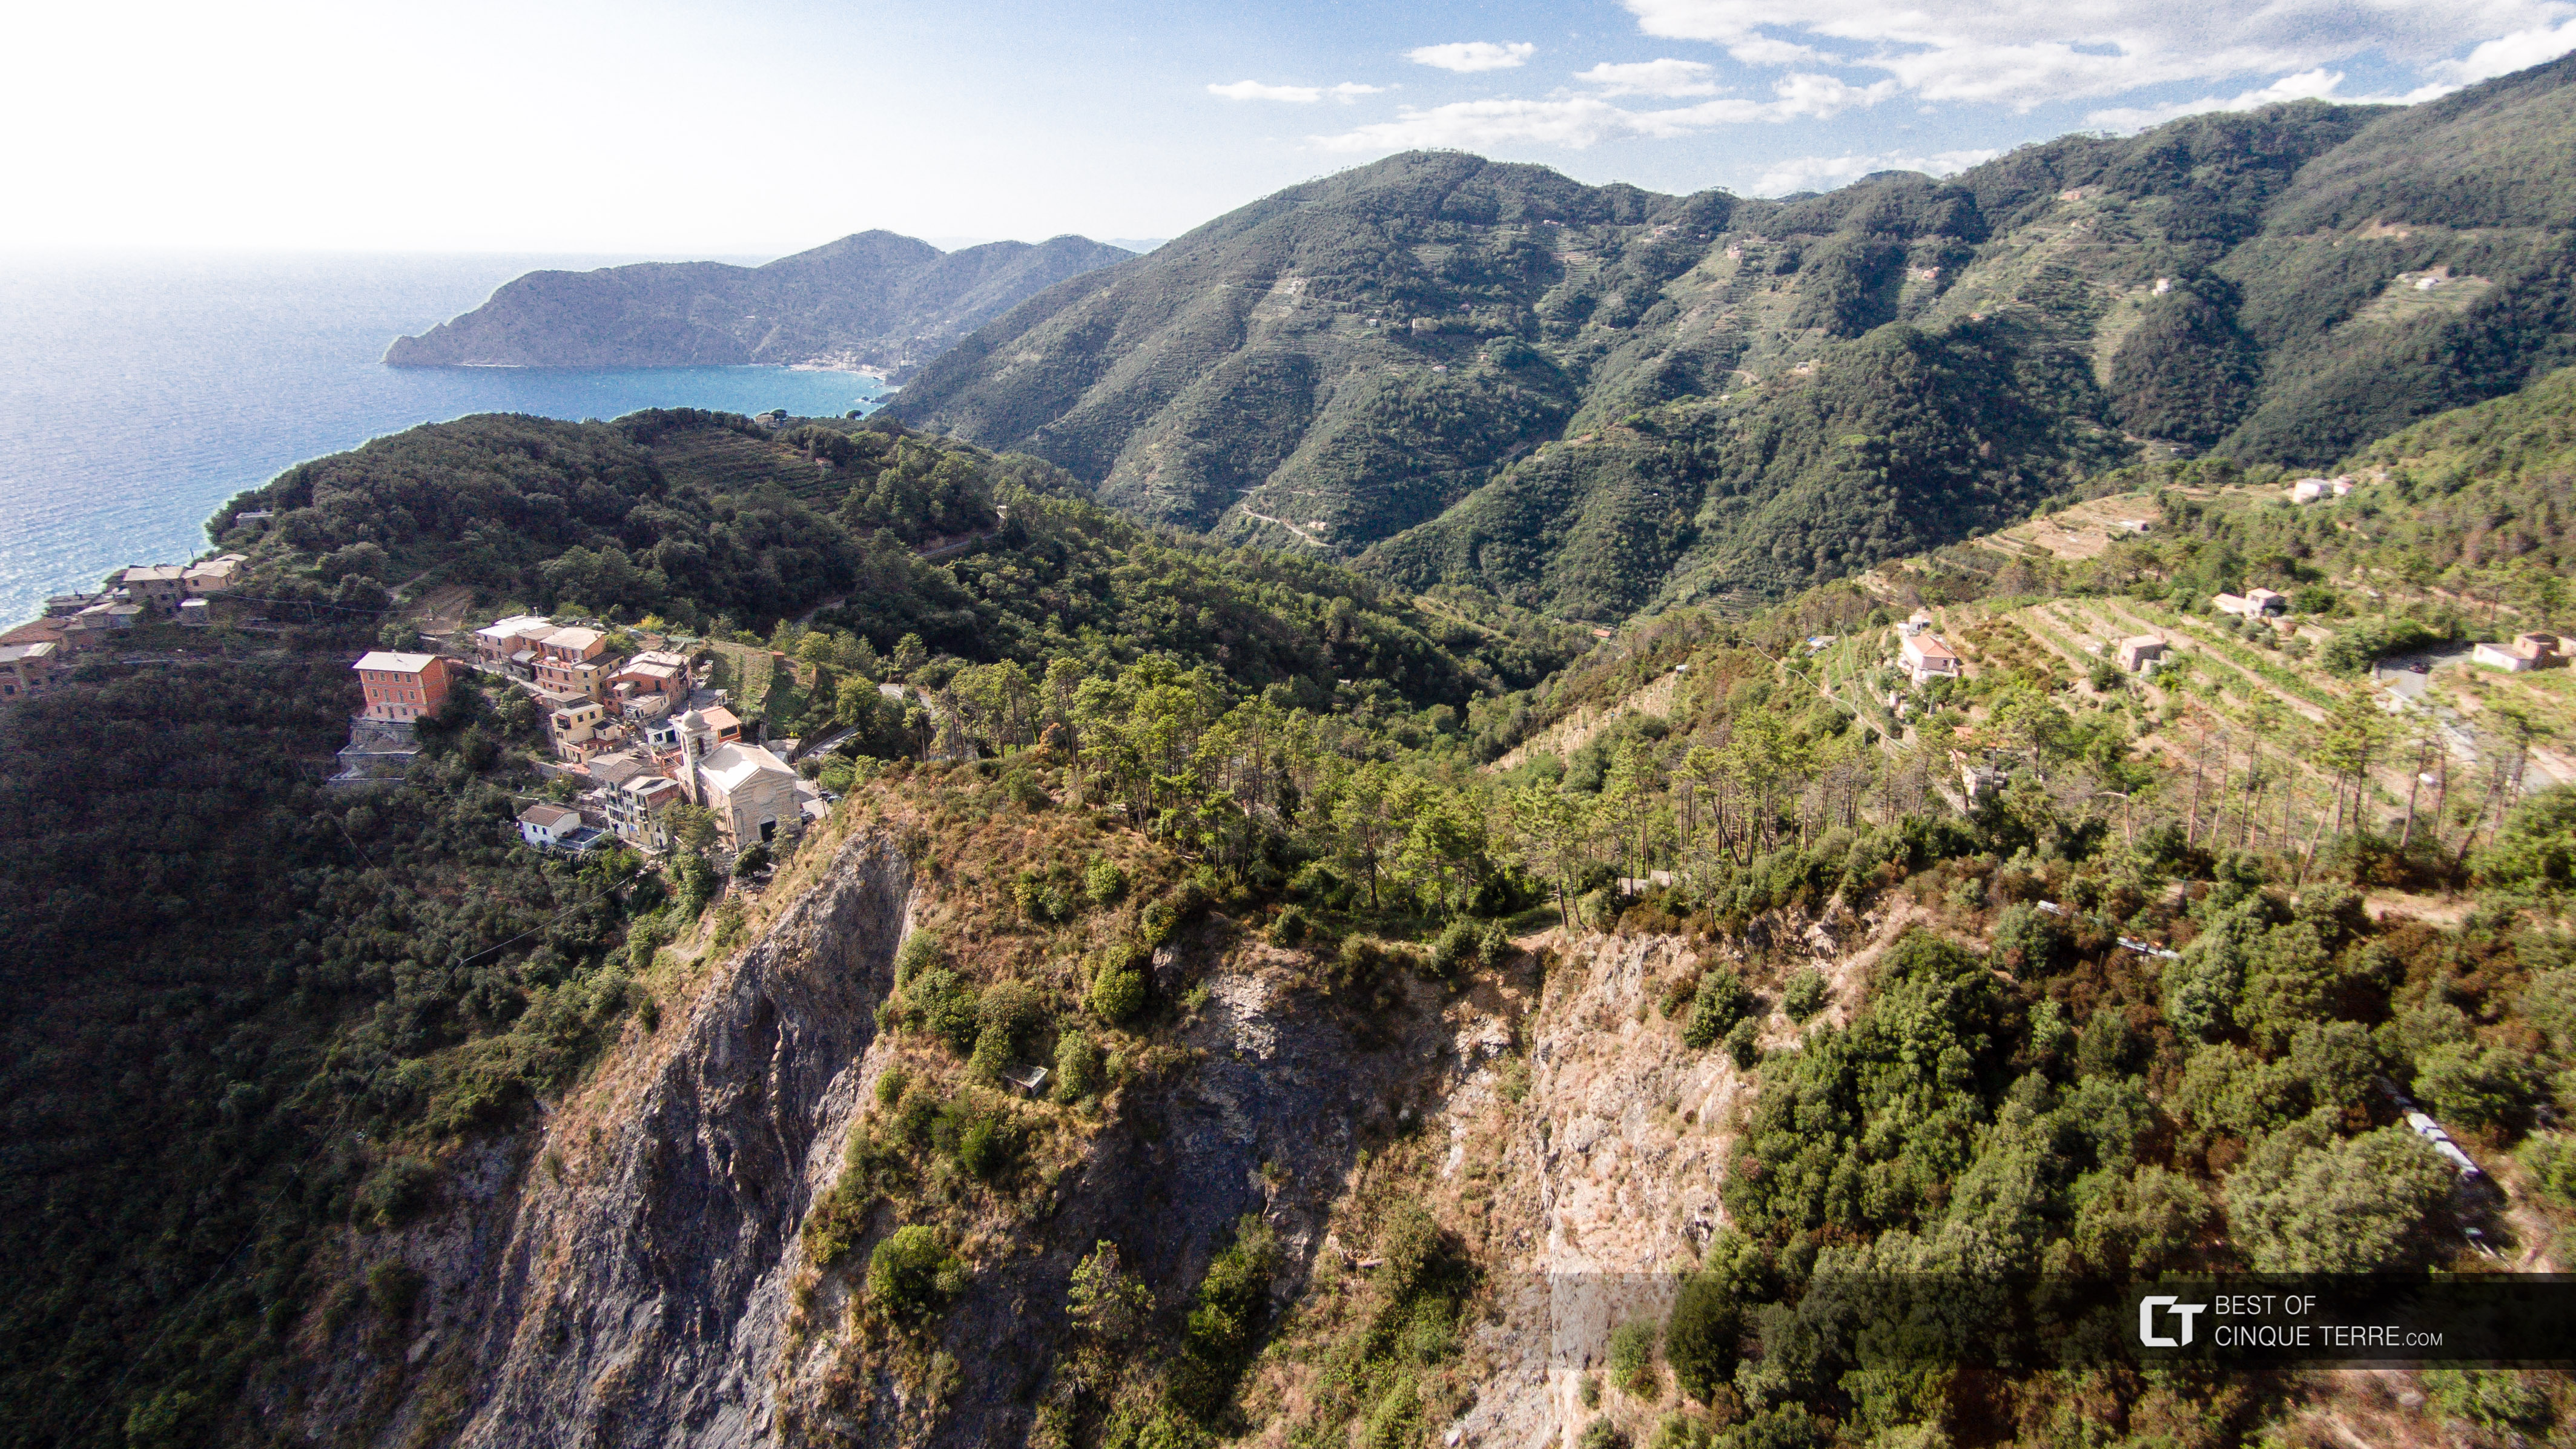 Вид на Сан-Бернардино с дрона, Вернацца, Чинкве-Терре, Италия